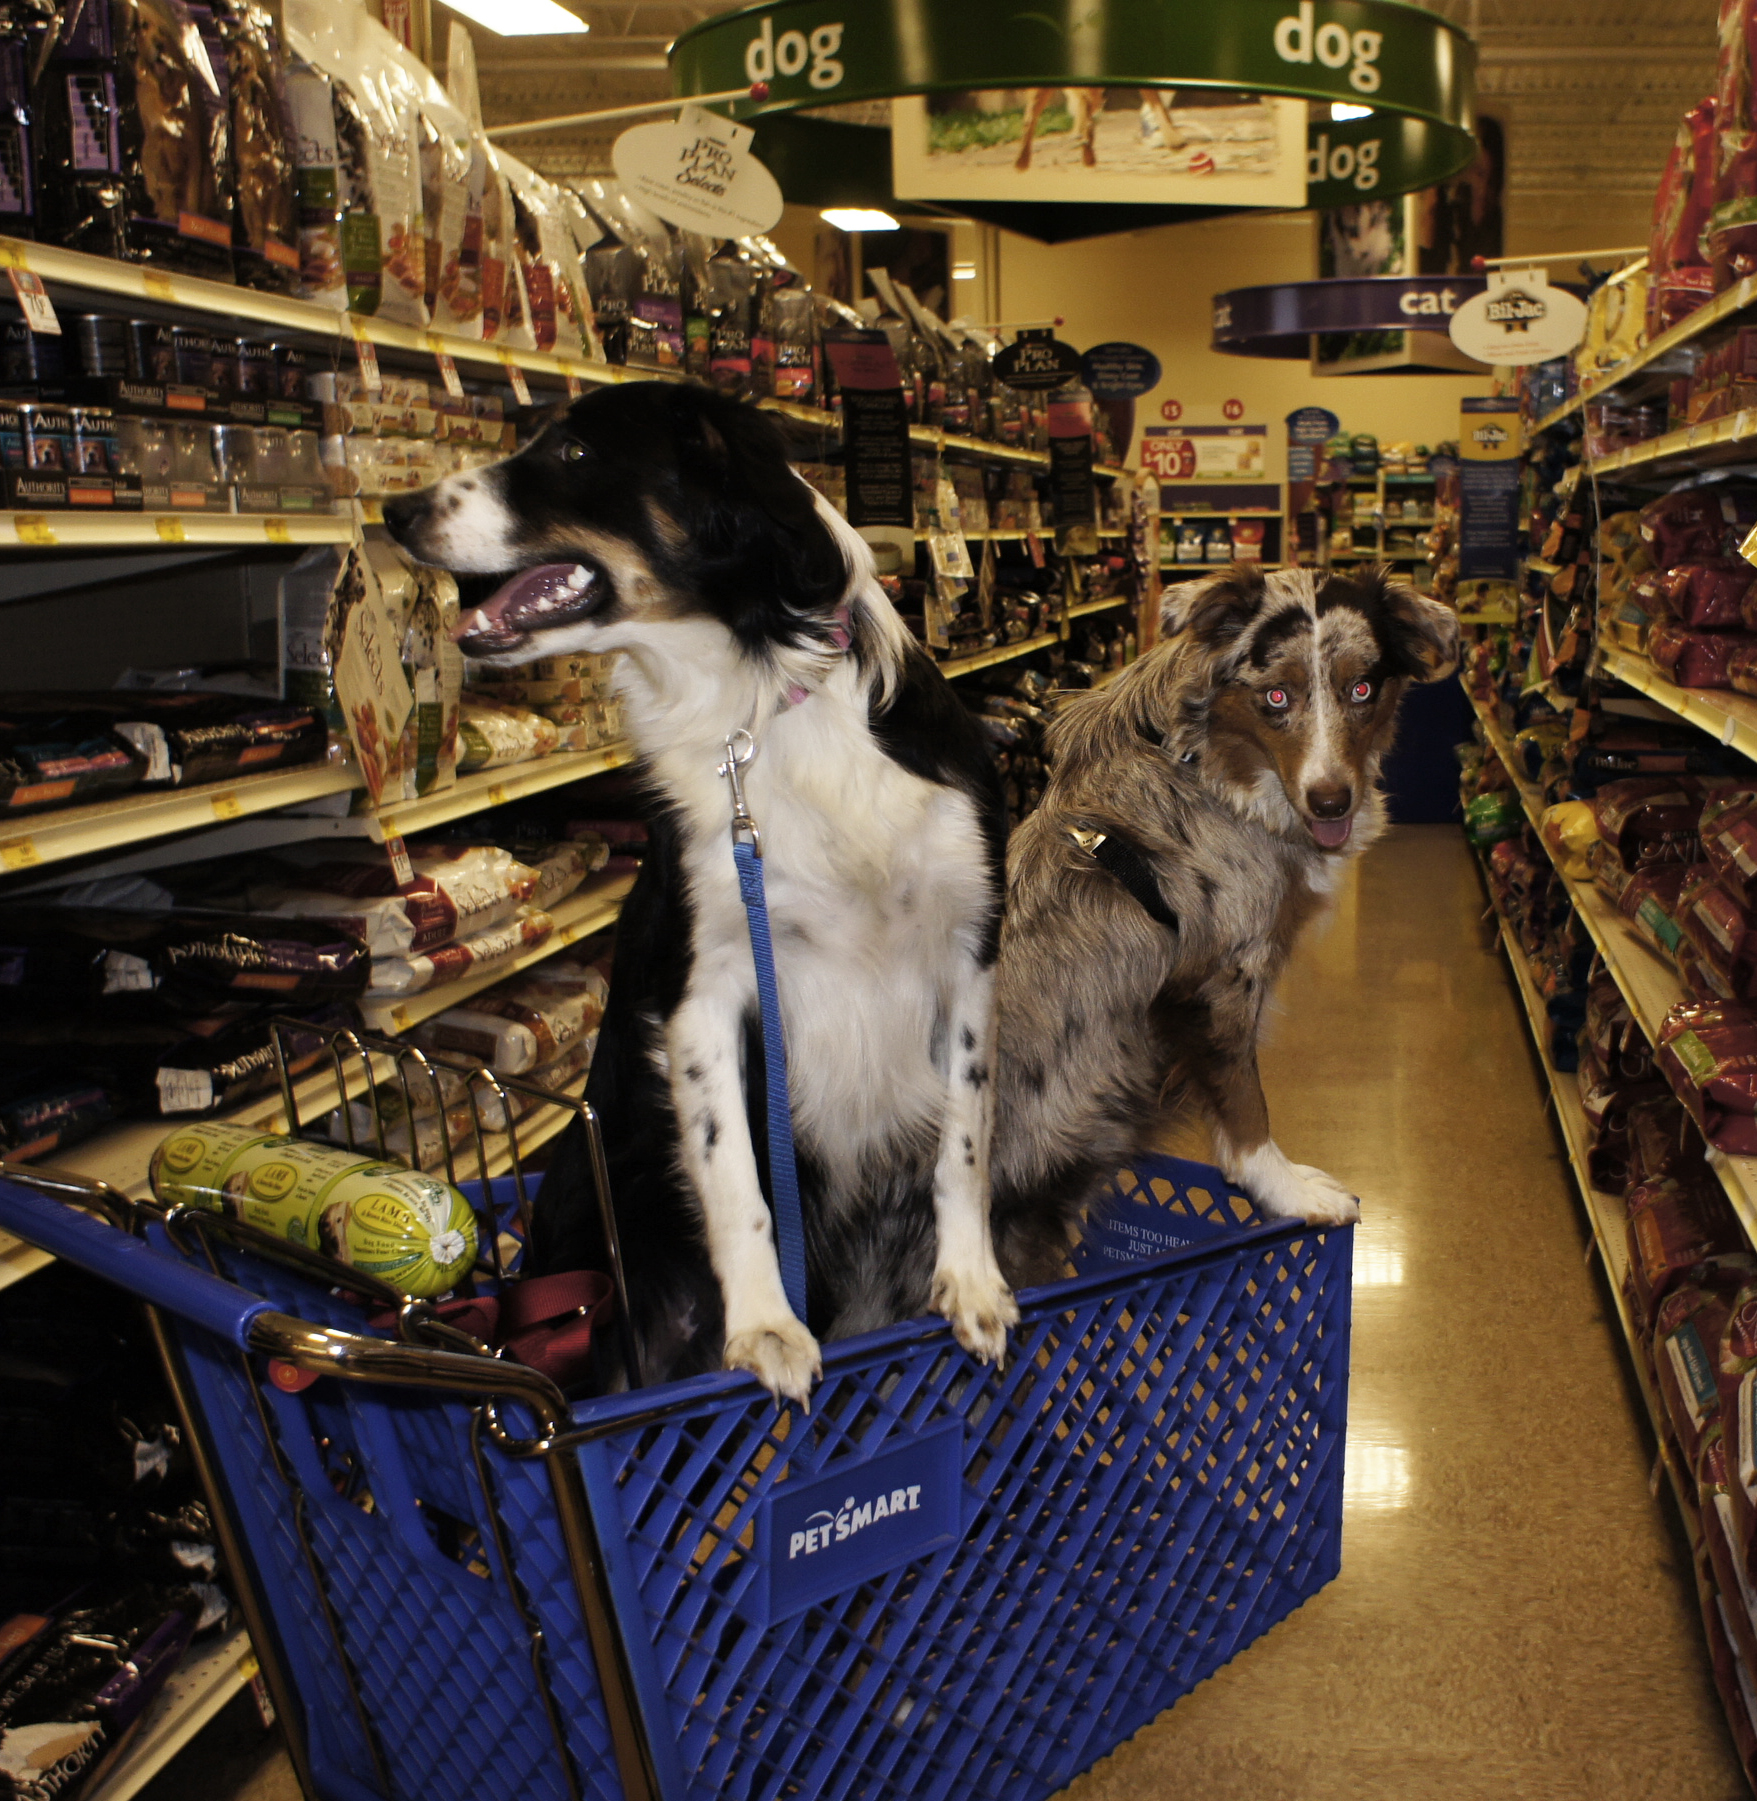 Uma fotografia mostra 2 cães andando em um carrinho de compras dentro de uma loja inteligente para animais de estimação.